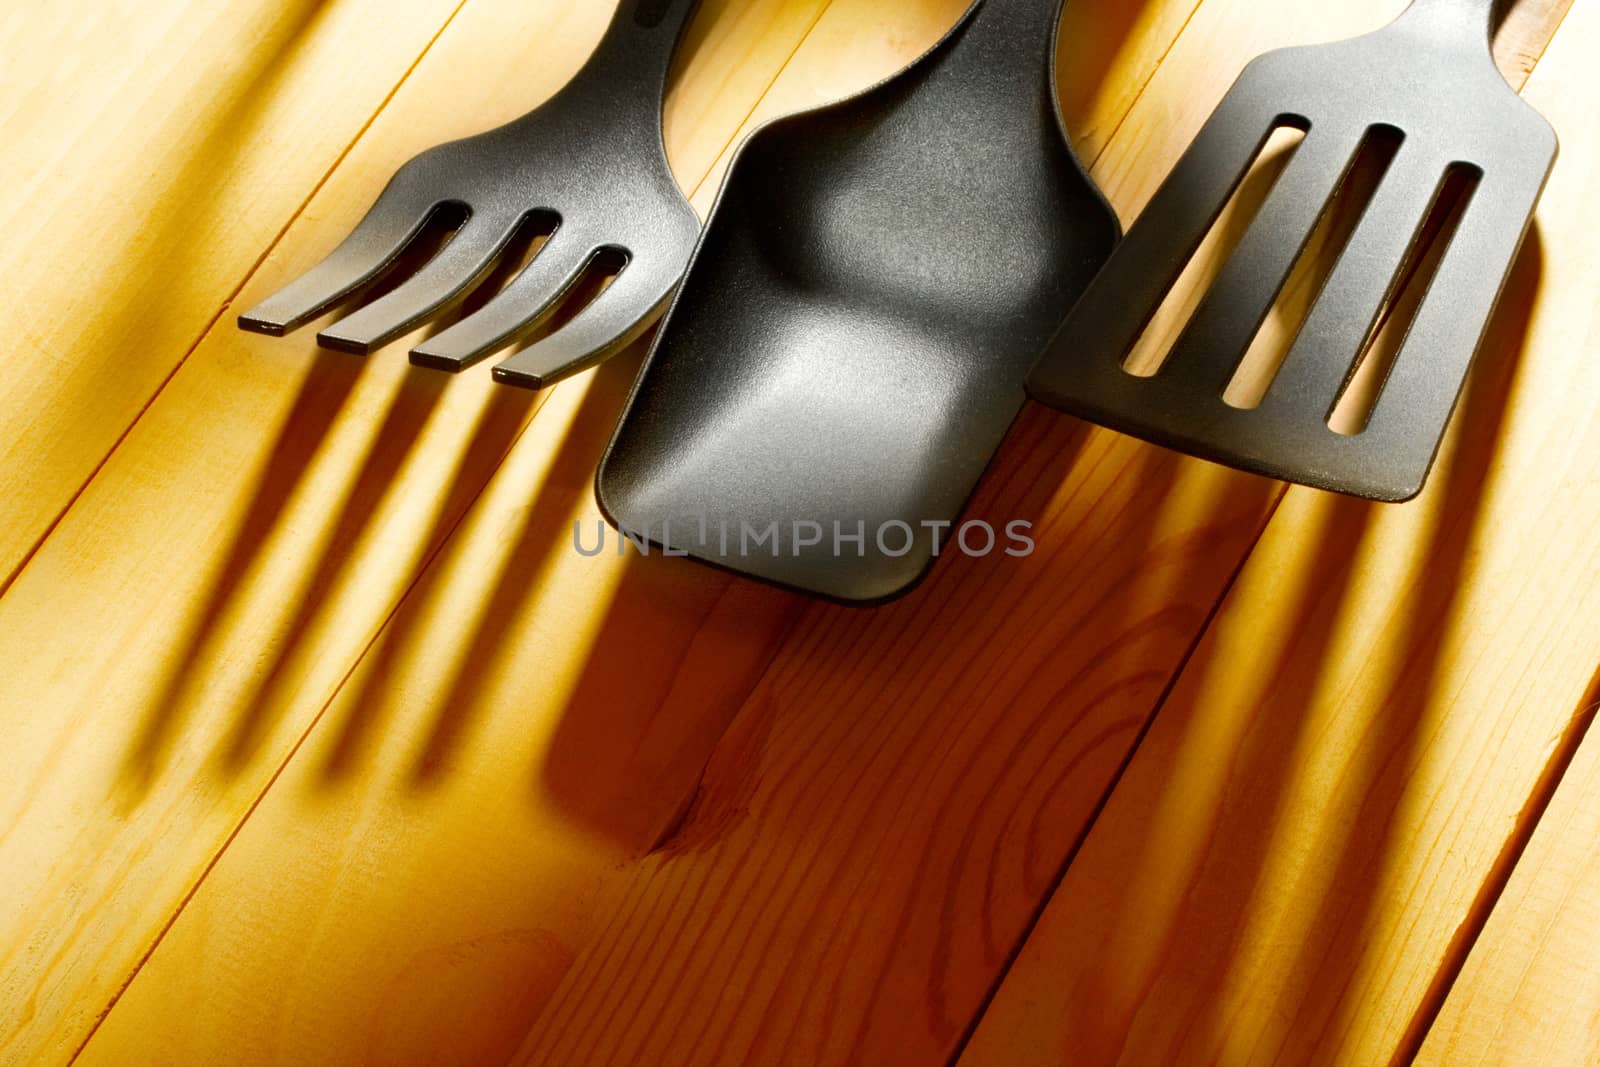 Kitchen utensil collection by Garsya